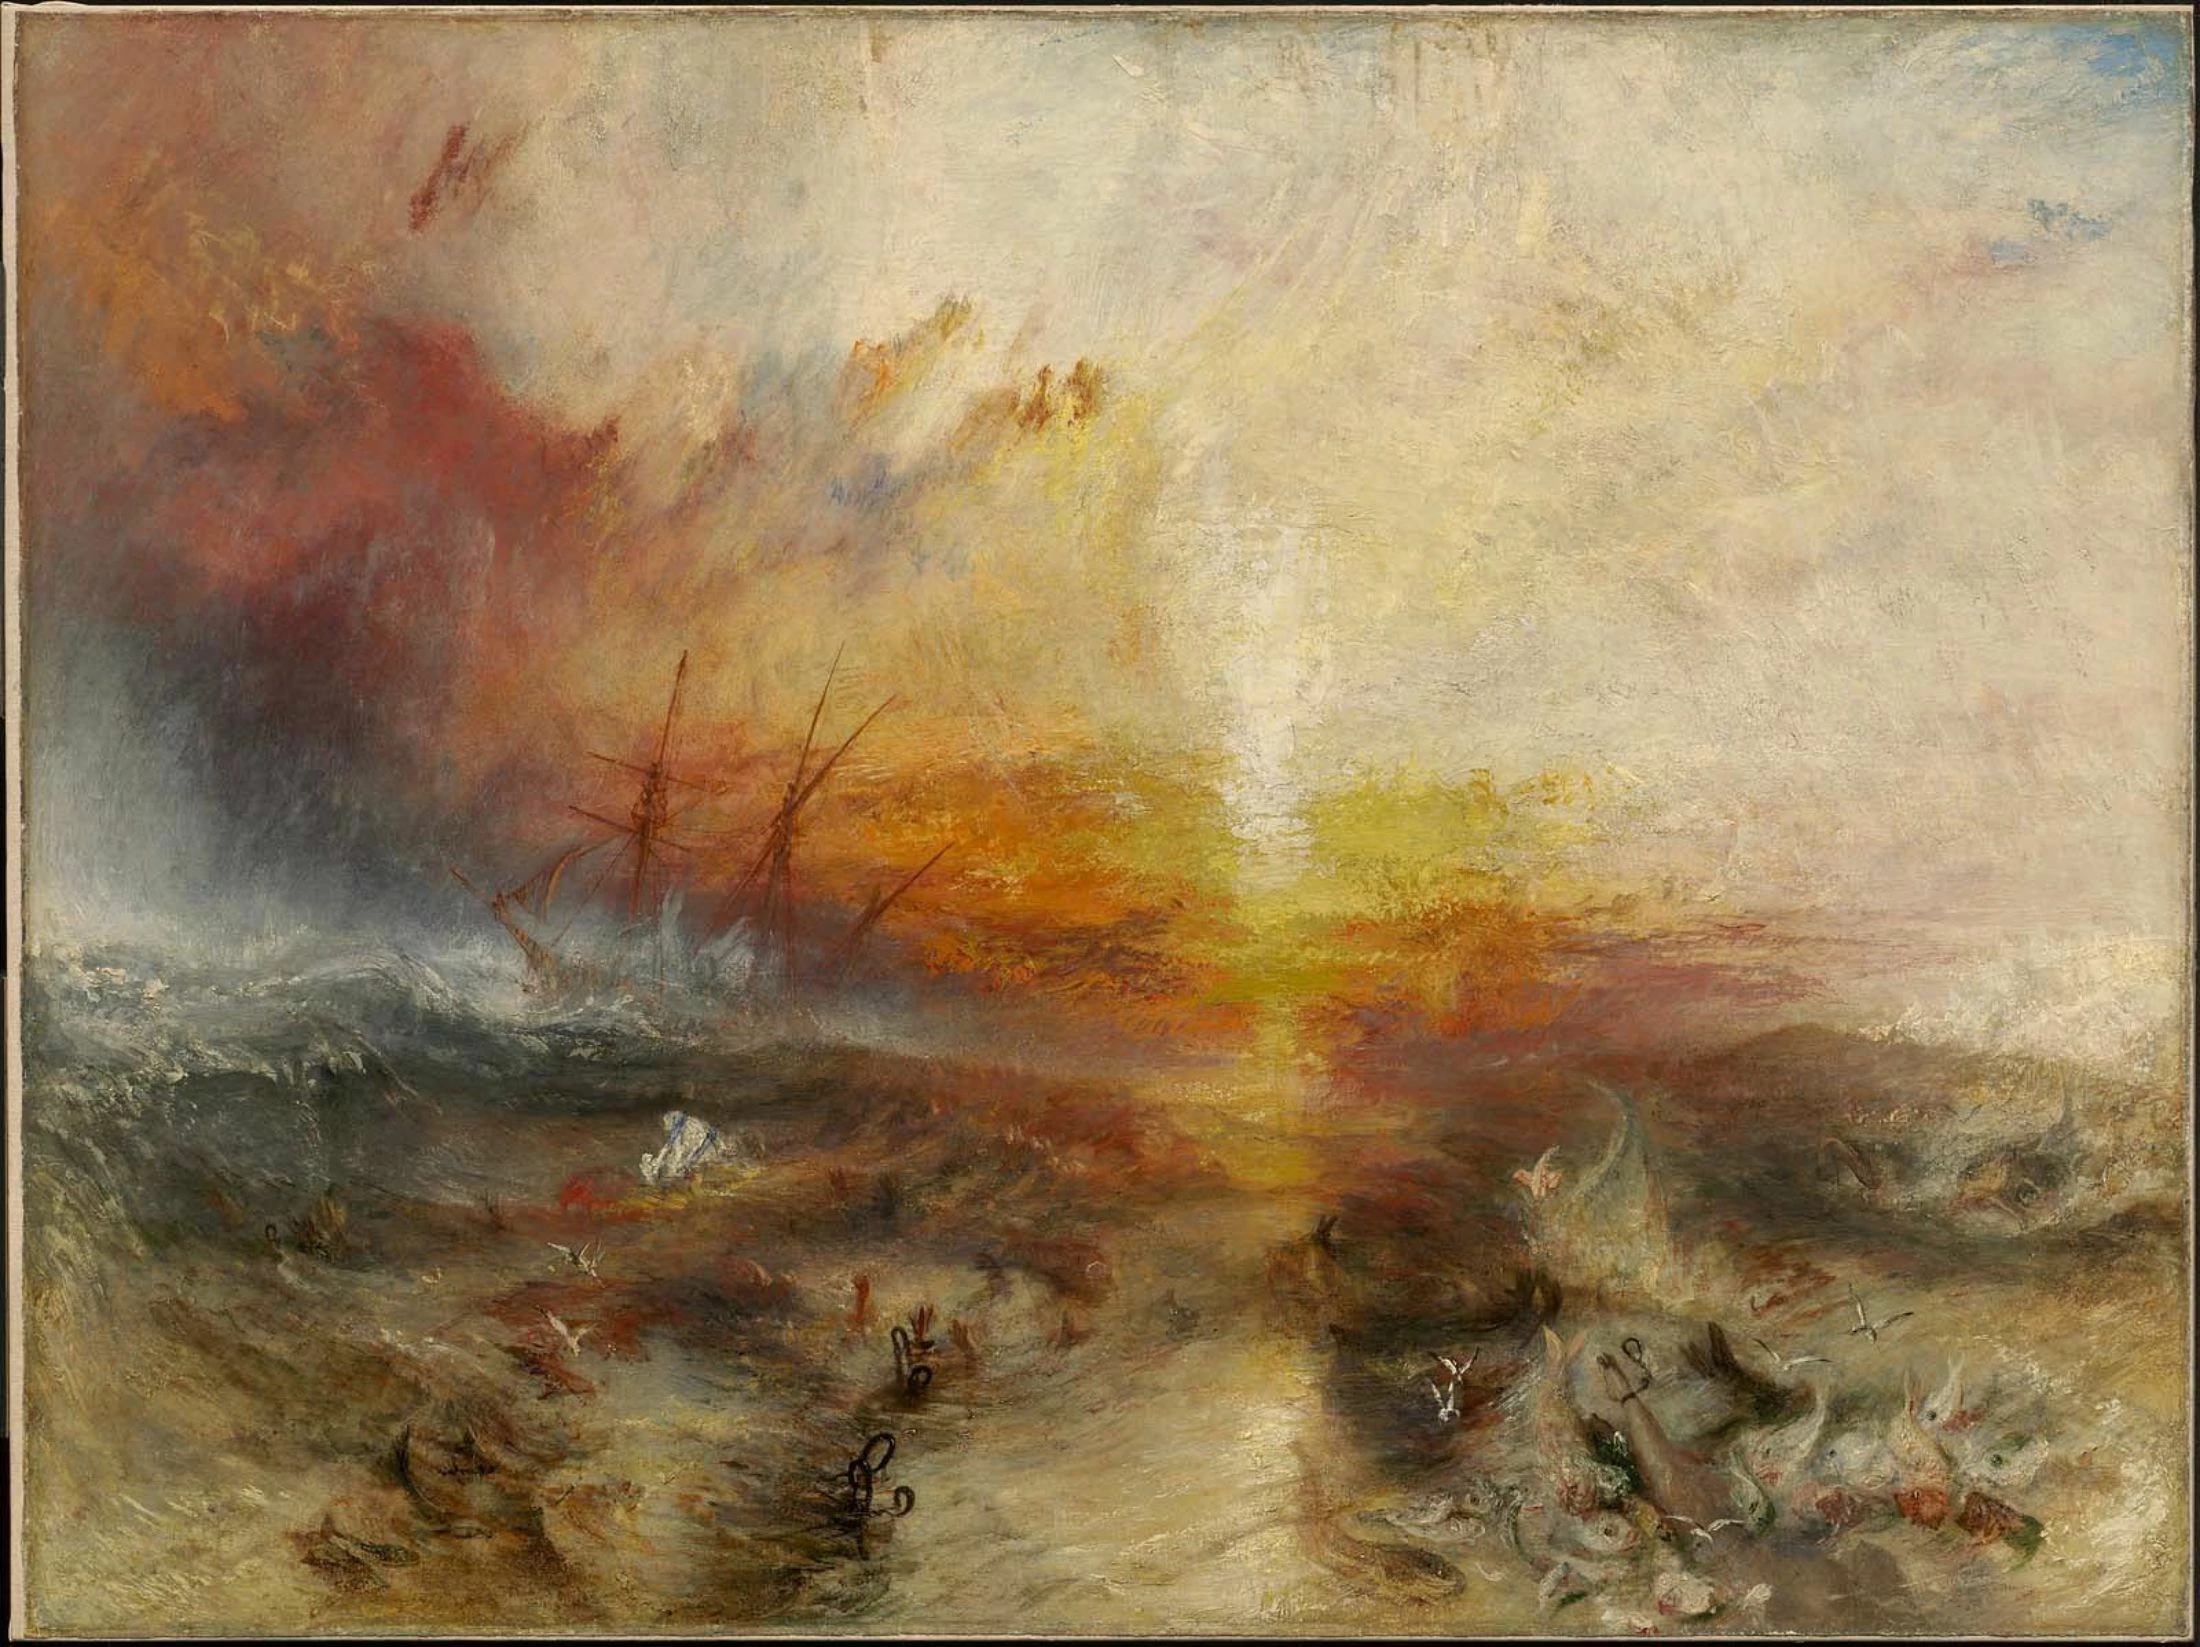 The Slave Ship, Joseph Mallord William Turner